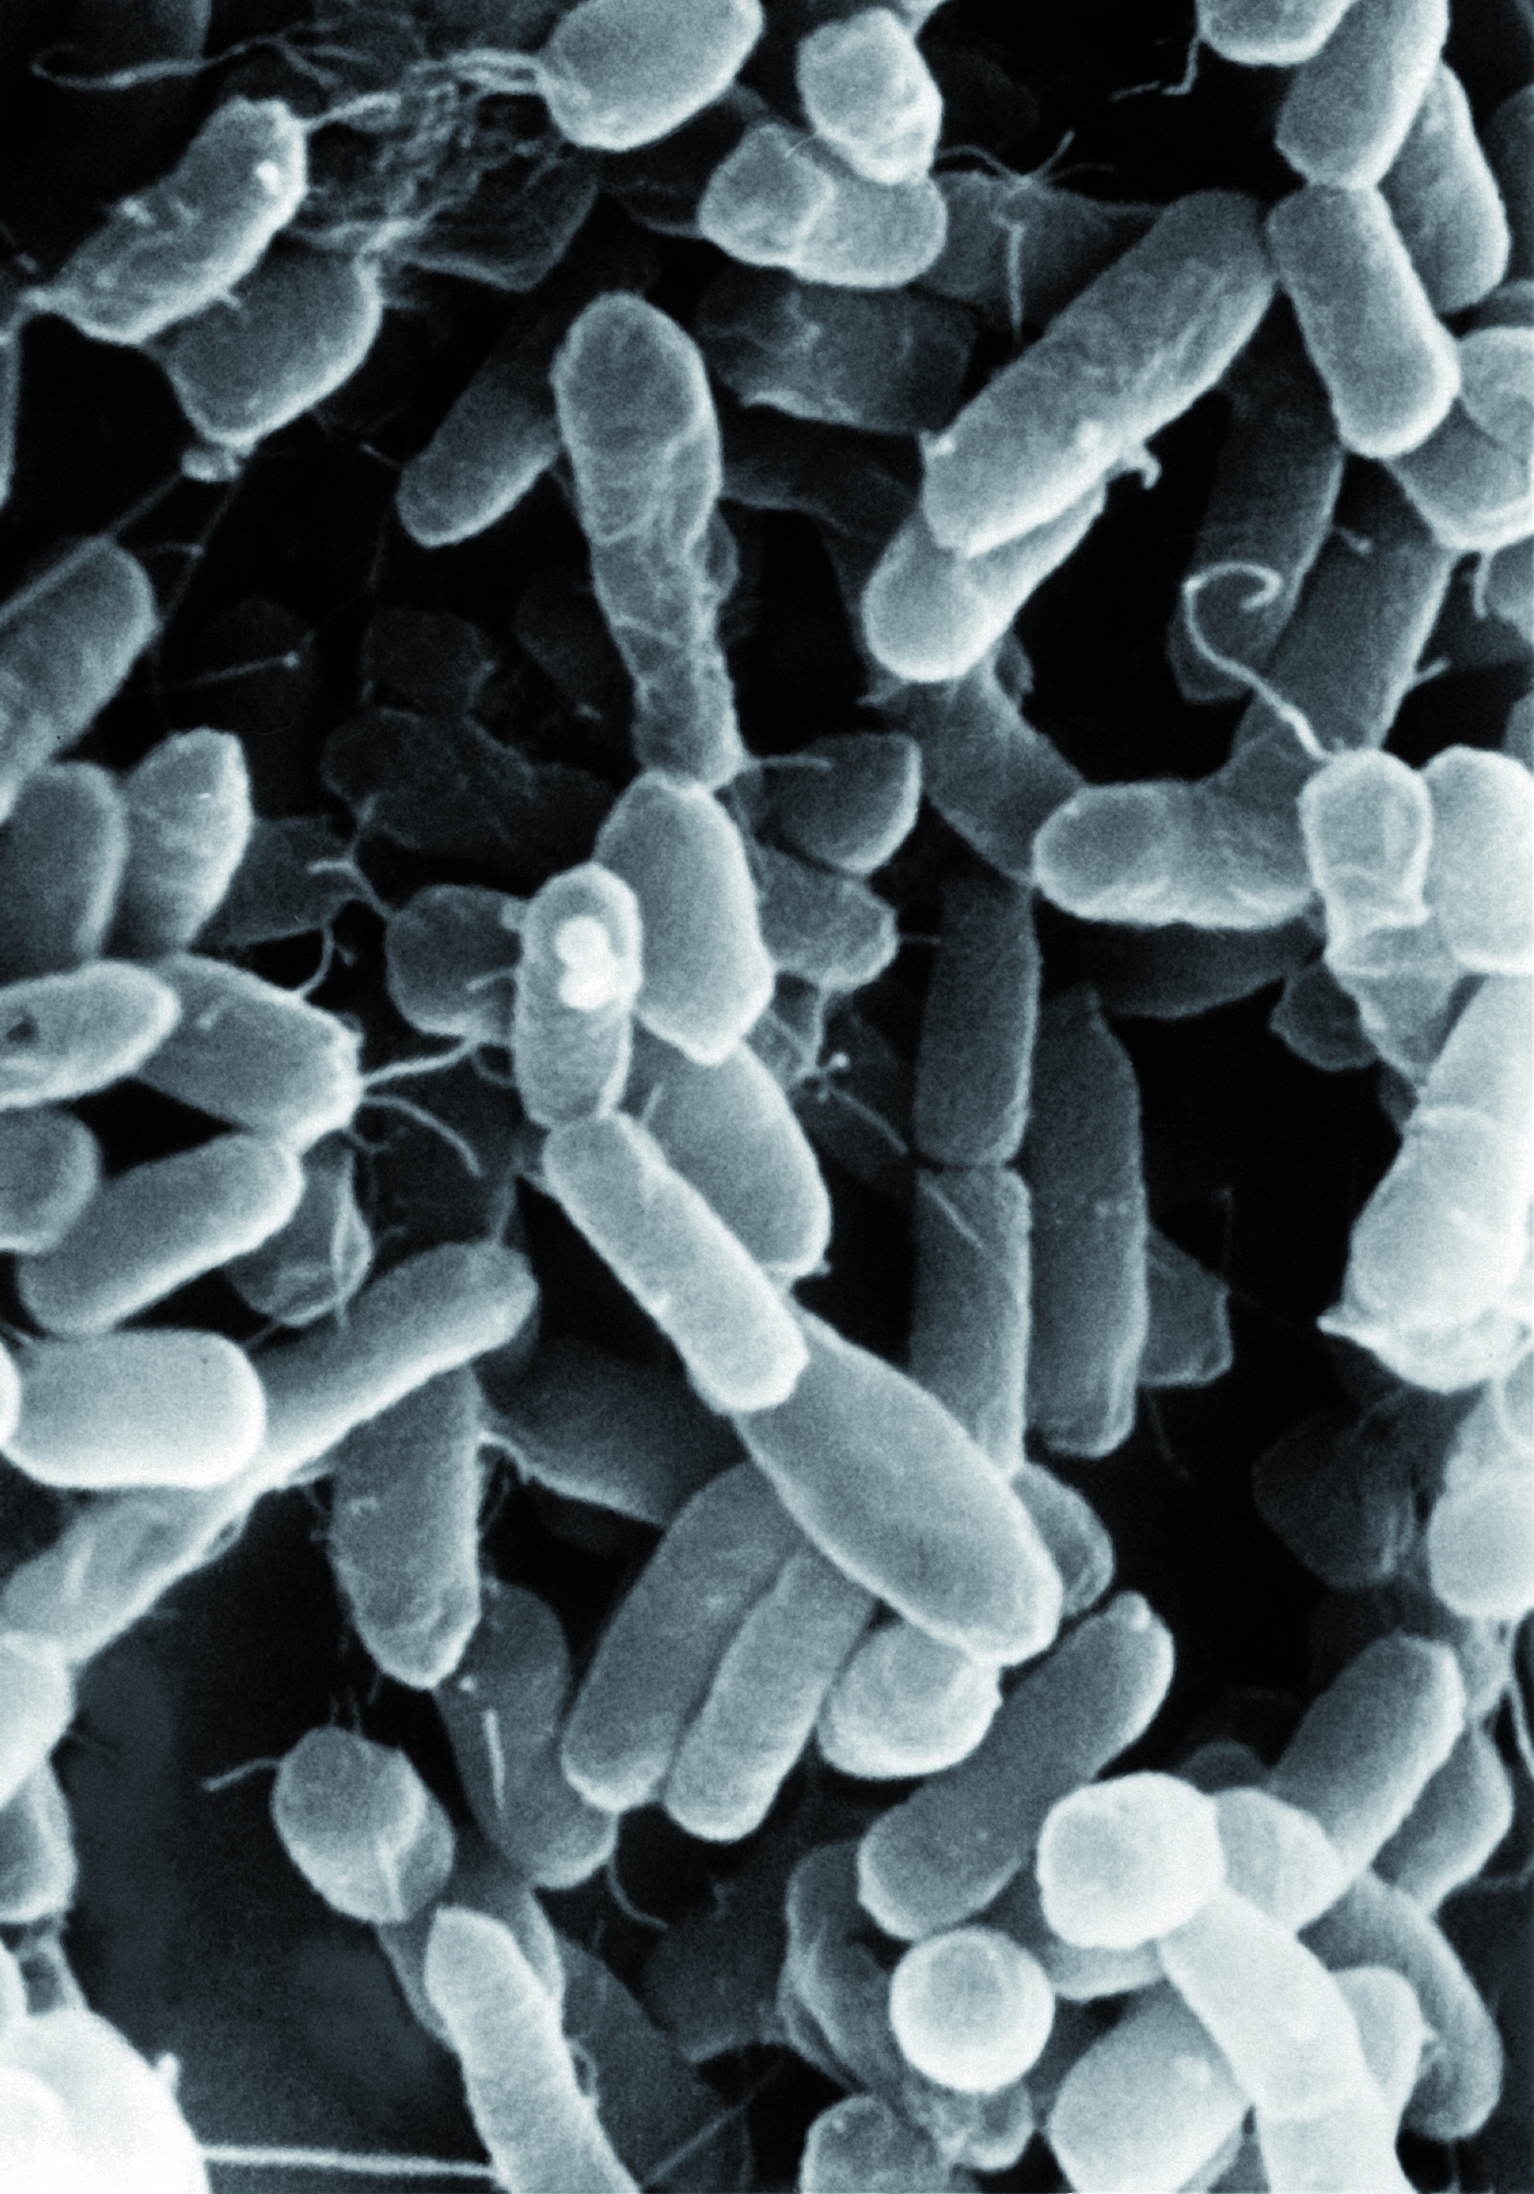 E. coli Stamm Nissle 1917